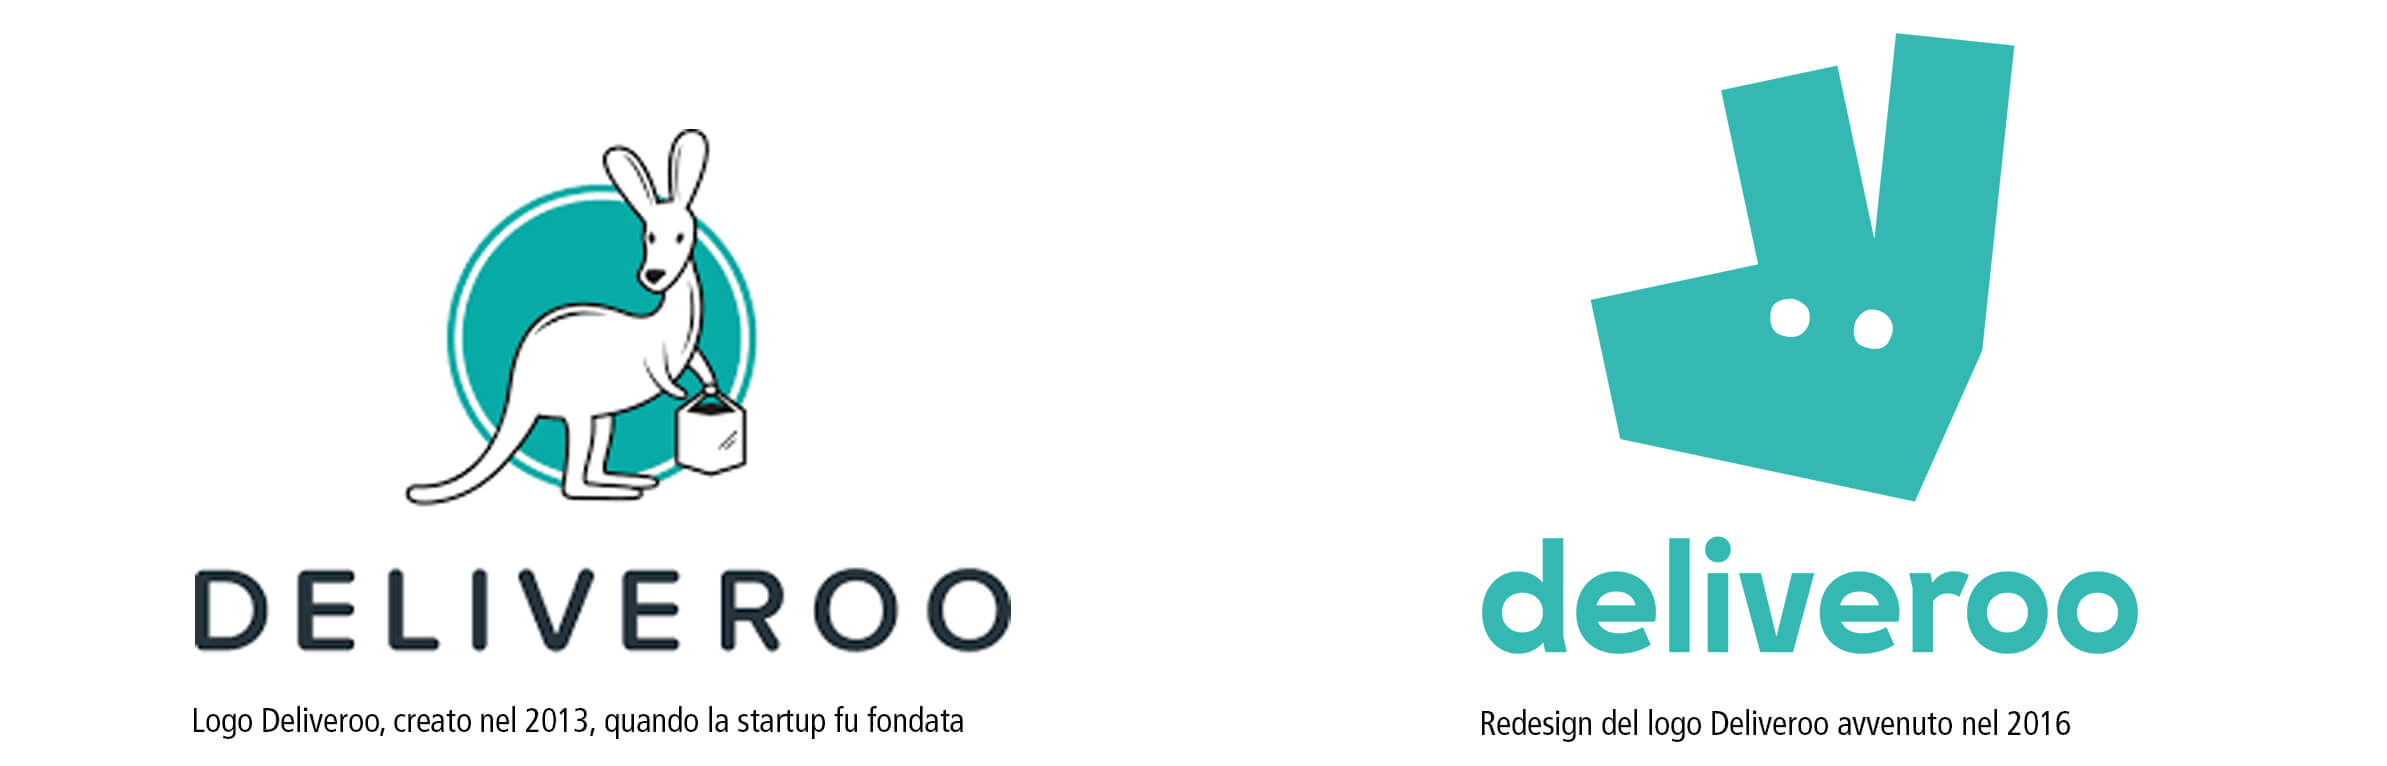 Logo Deliveroo prima e dopo il rebrand